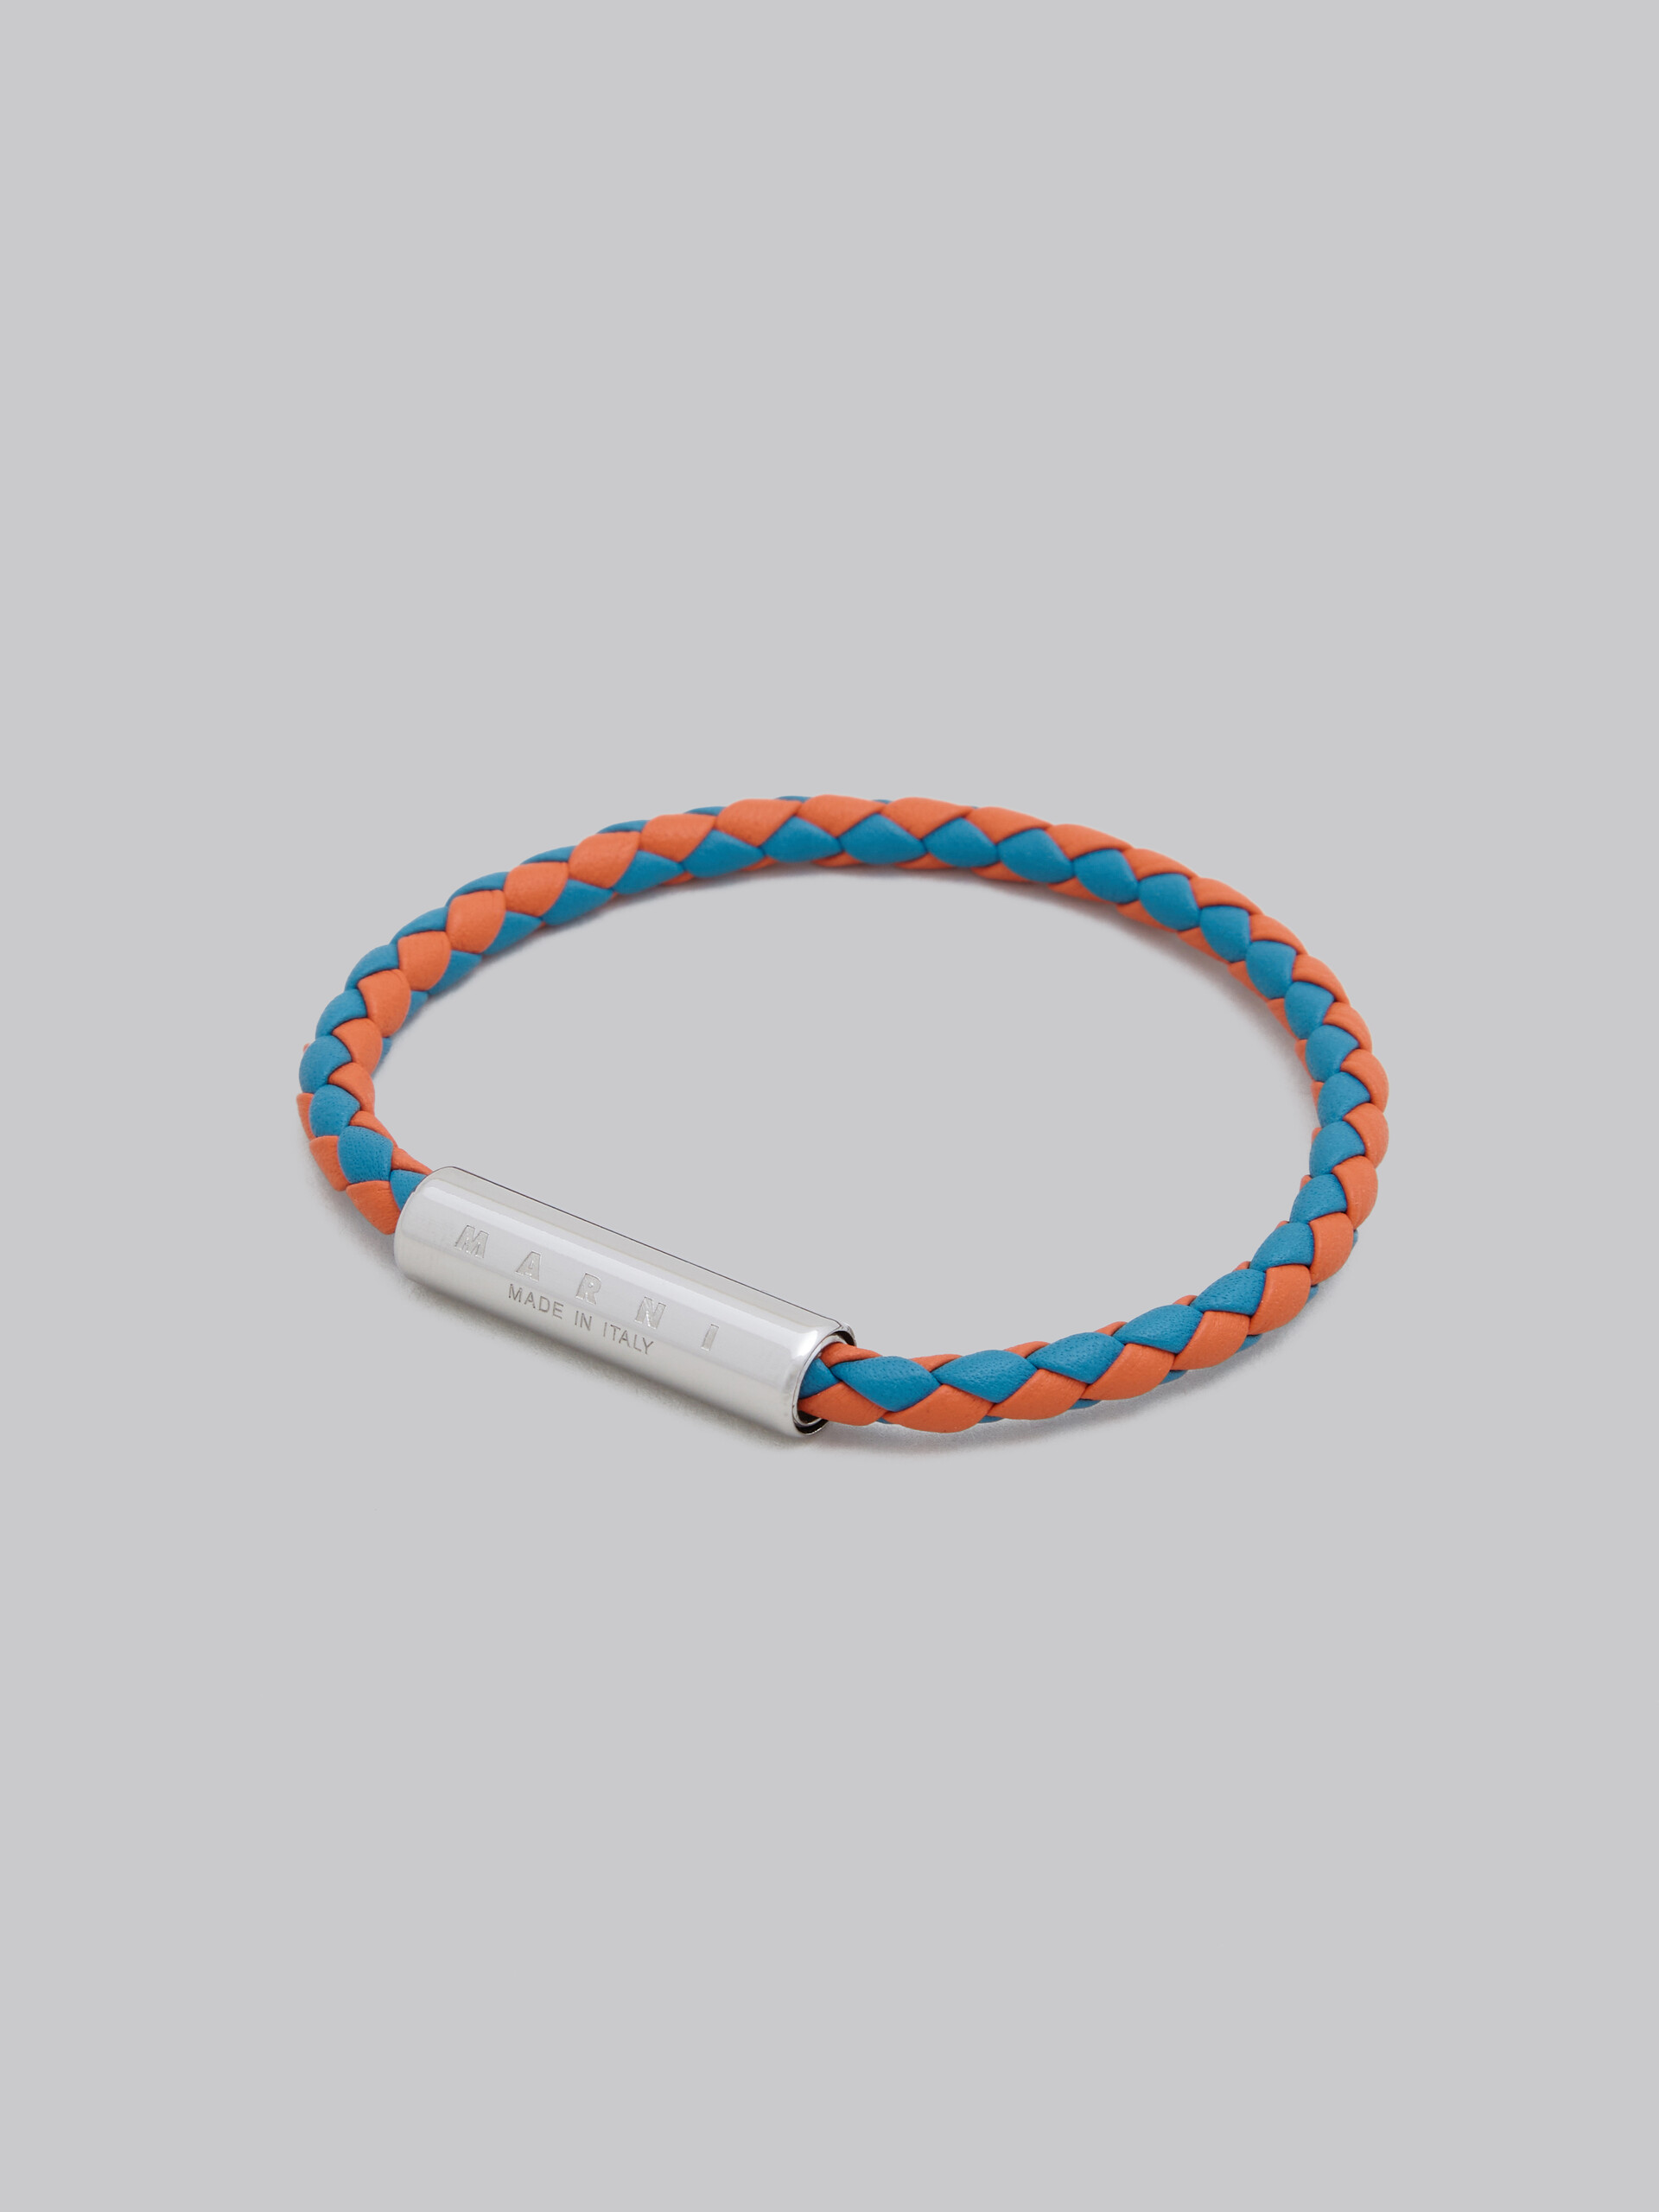 Turquoise and orange woven leather bracelet - Bracelets - Image 4